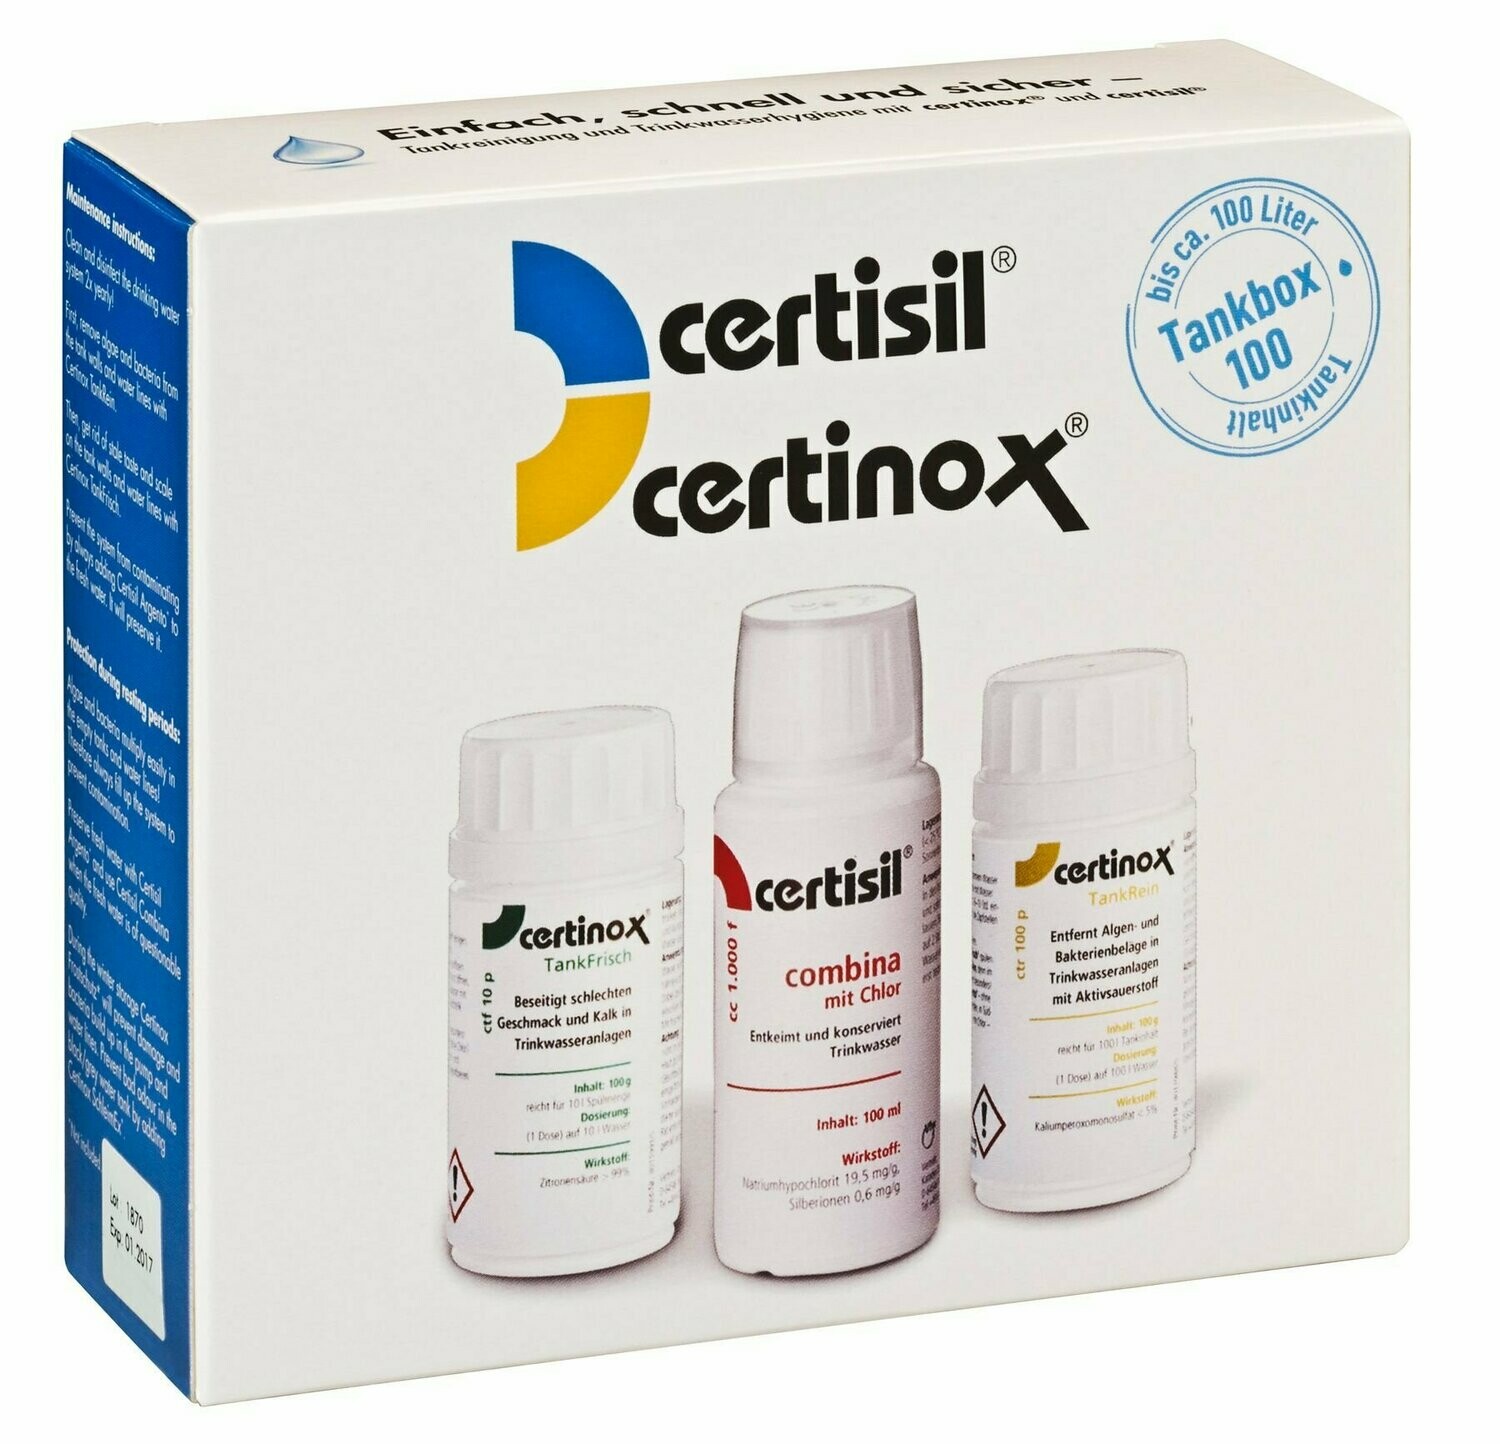 Certisil Certinox CertiBox 100